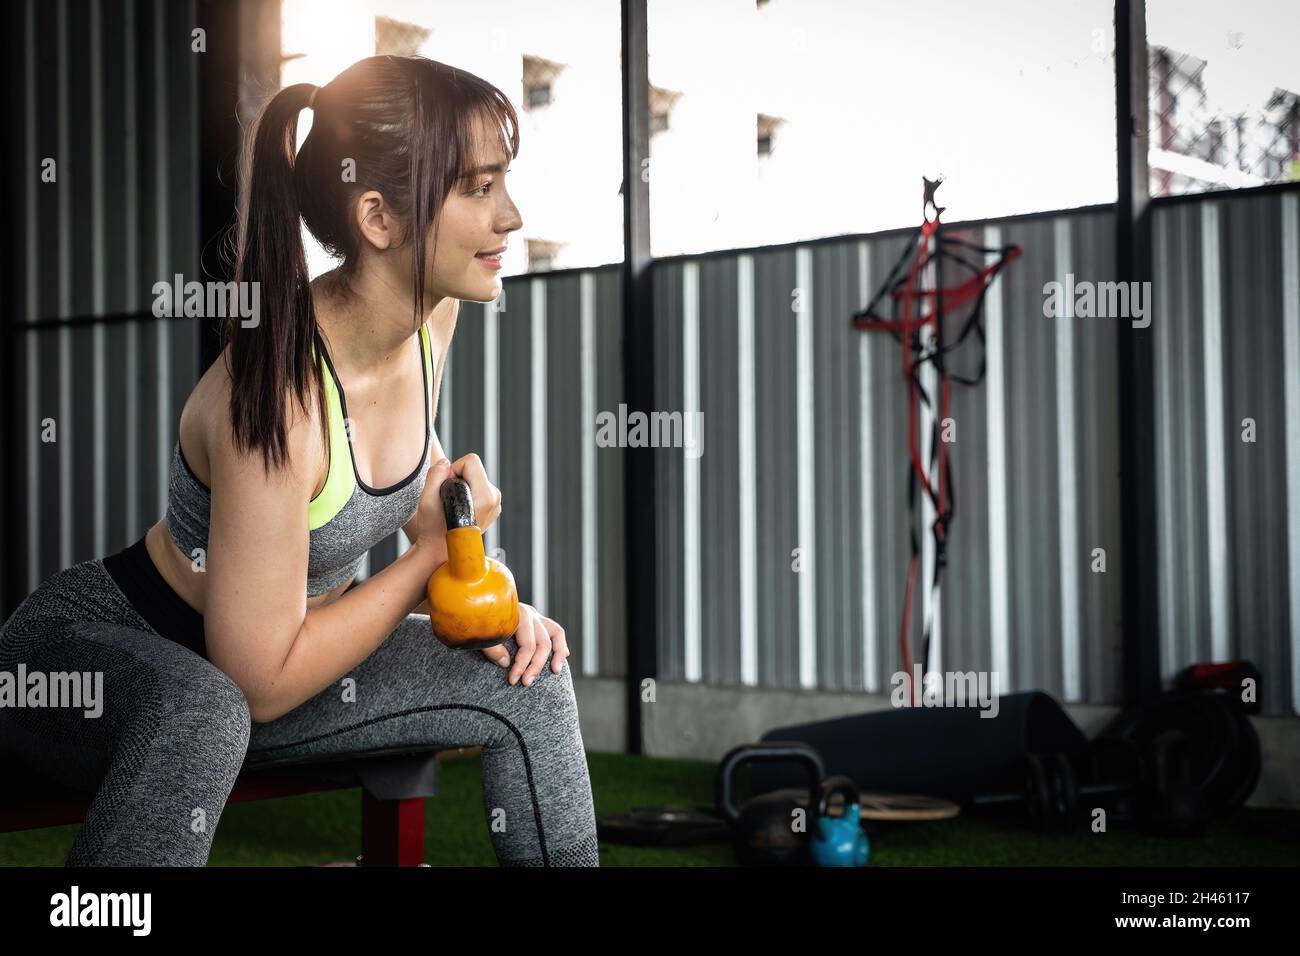 Le giovani donne asiatiche godono di esercitarsi con il campanello del bollitore di sollevamento con una mano alla palestra. concetto di bodybuilding di sport. Foto Stock